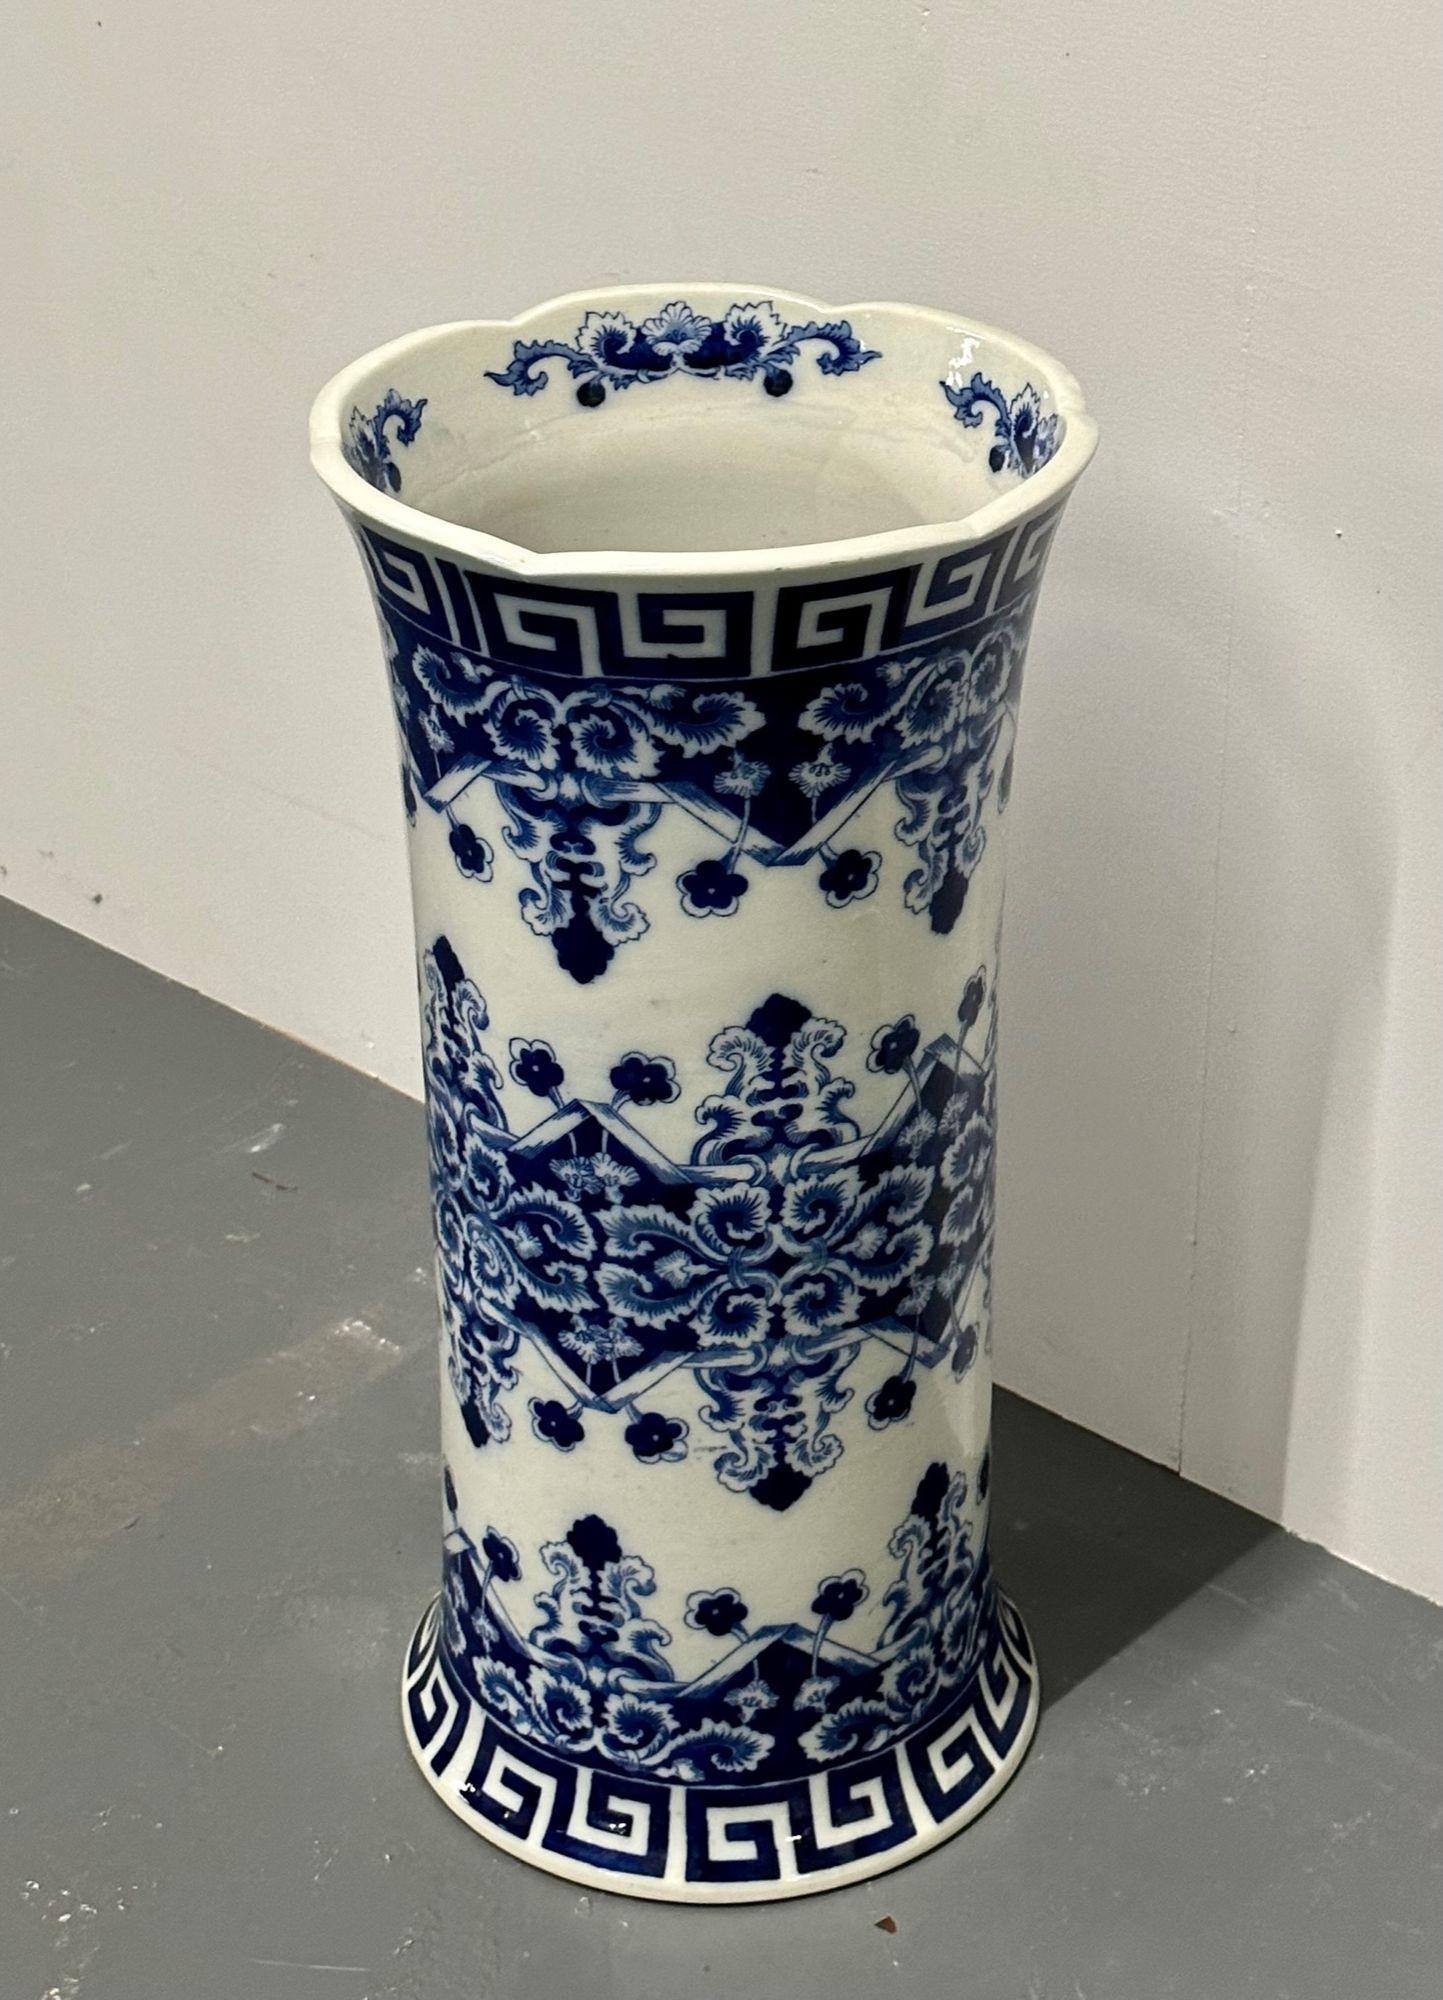 Orientalisches Porzellan Flow Blau Weiß Umbrella Stand, Große Vase, Floral dekoriert
 
Sehr hübscher blau-weißer orientalischer Schirmständer oder große Vase aus Porzellan. Verziert mit einem wunderschönen blauen Blumenmotiv und einem griechischen